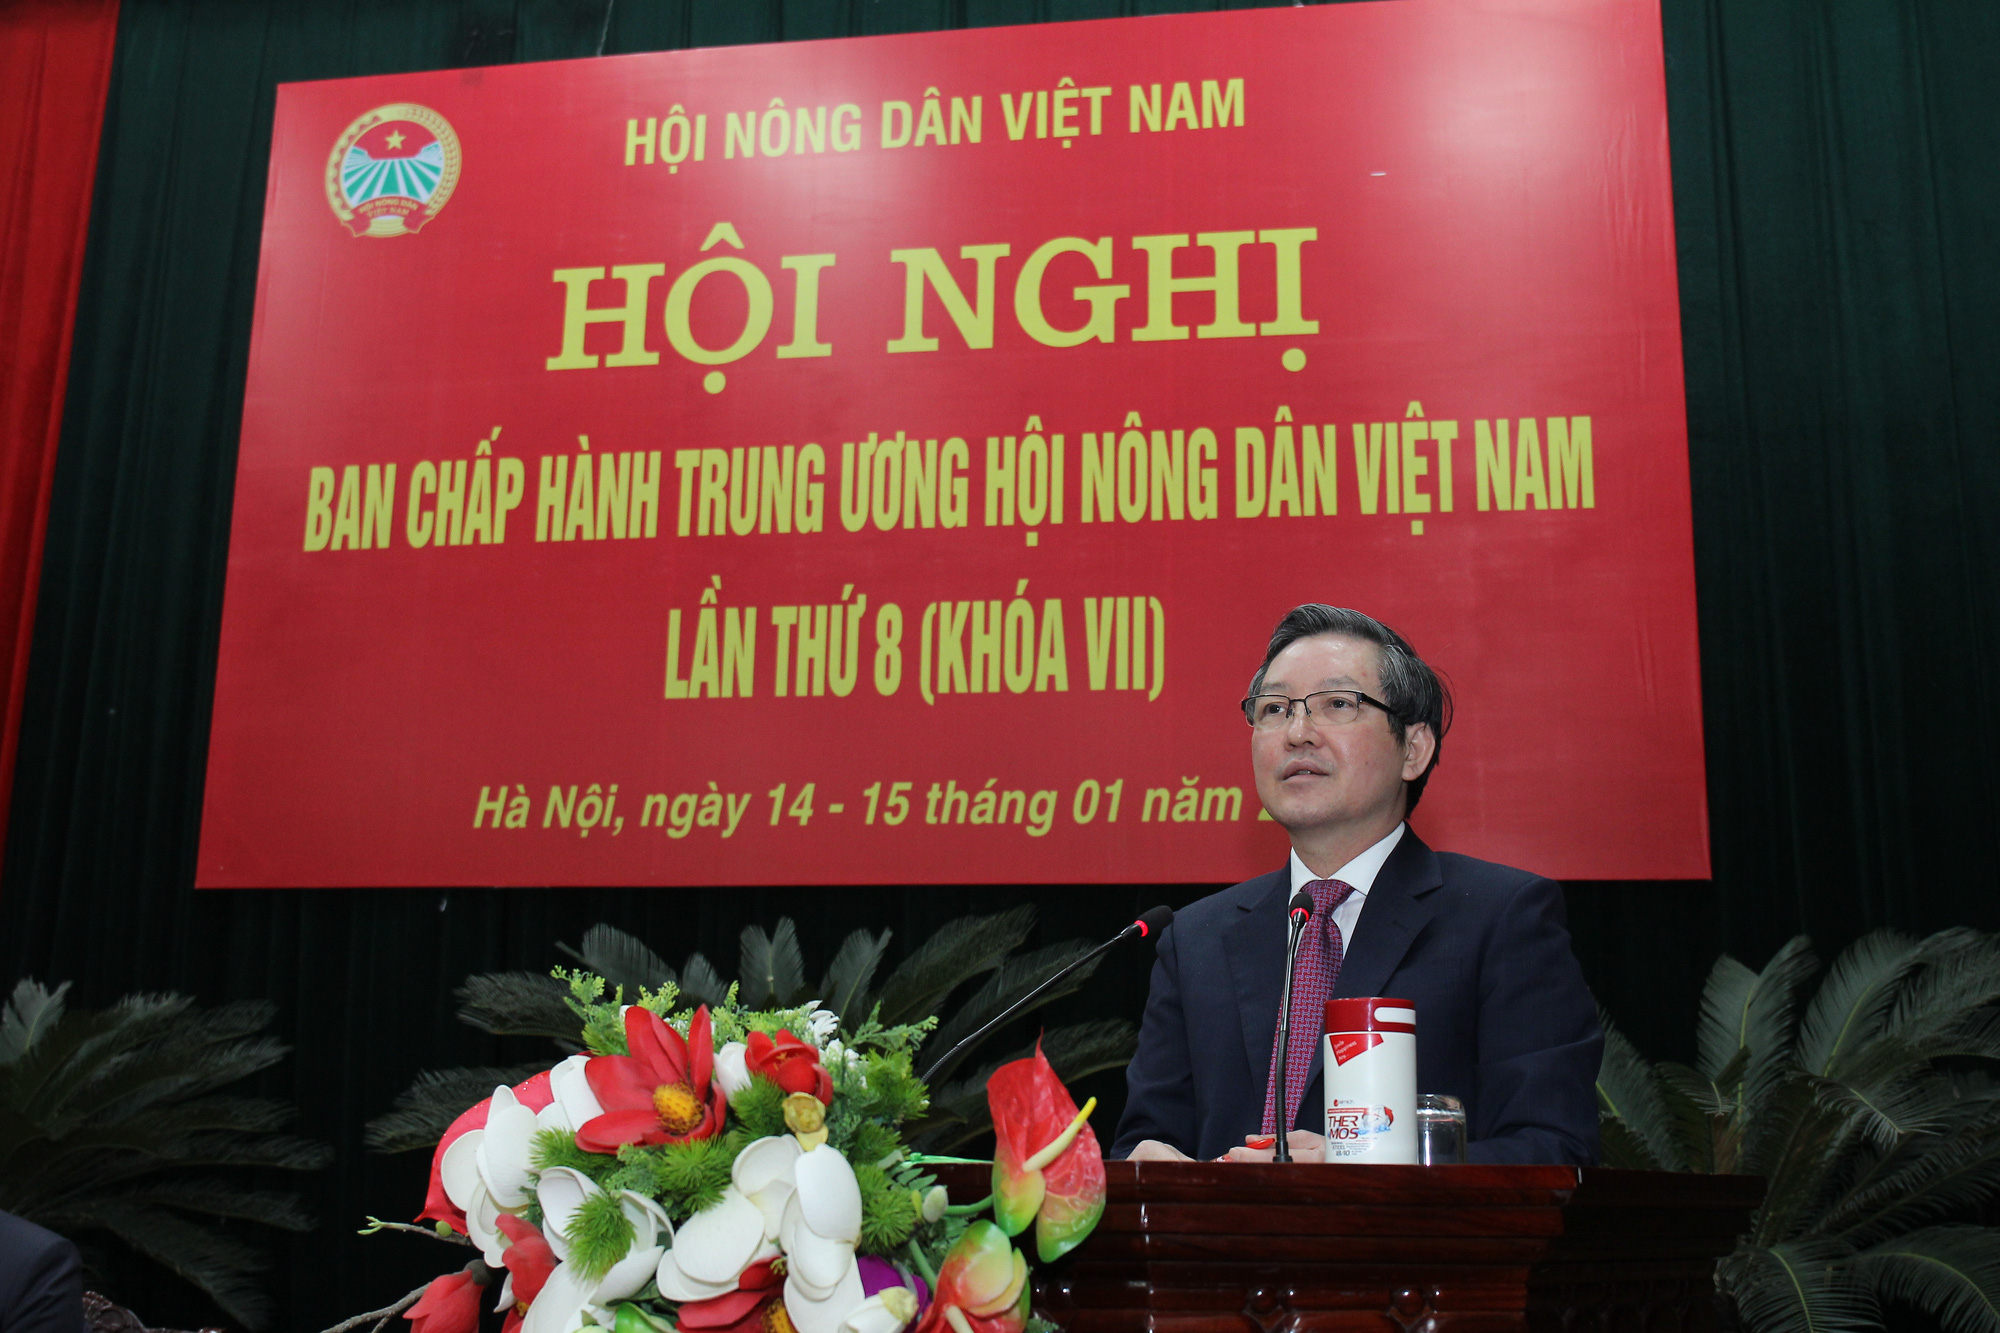 Chủ tịch Hội NDVN Lương Quốc Đoàn được bỏ phiếu tín nhiệm cao 98,8% - Ảnh 1.